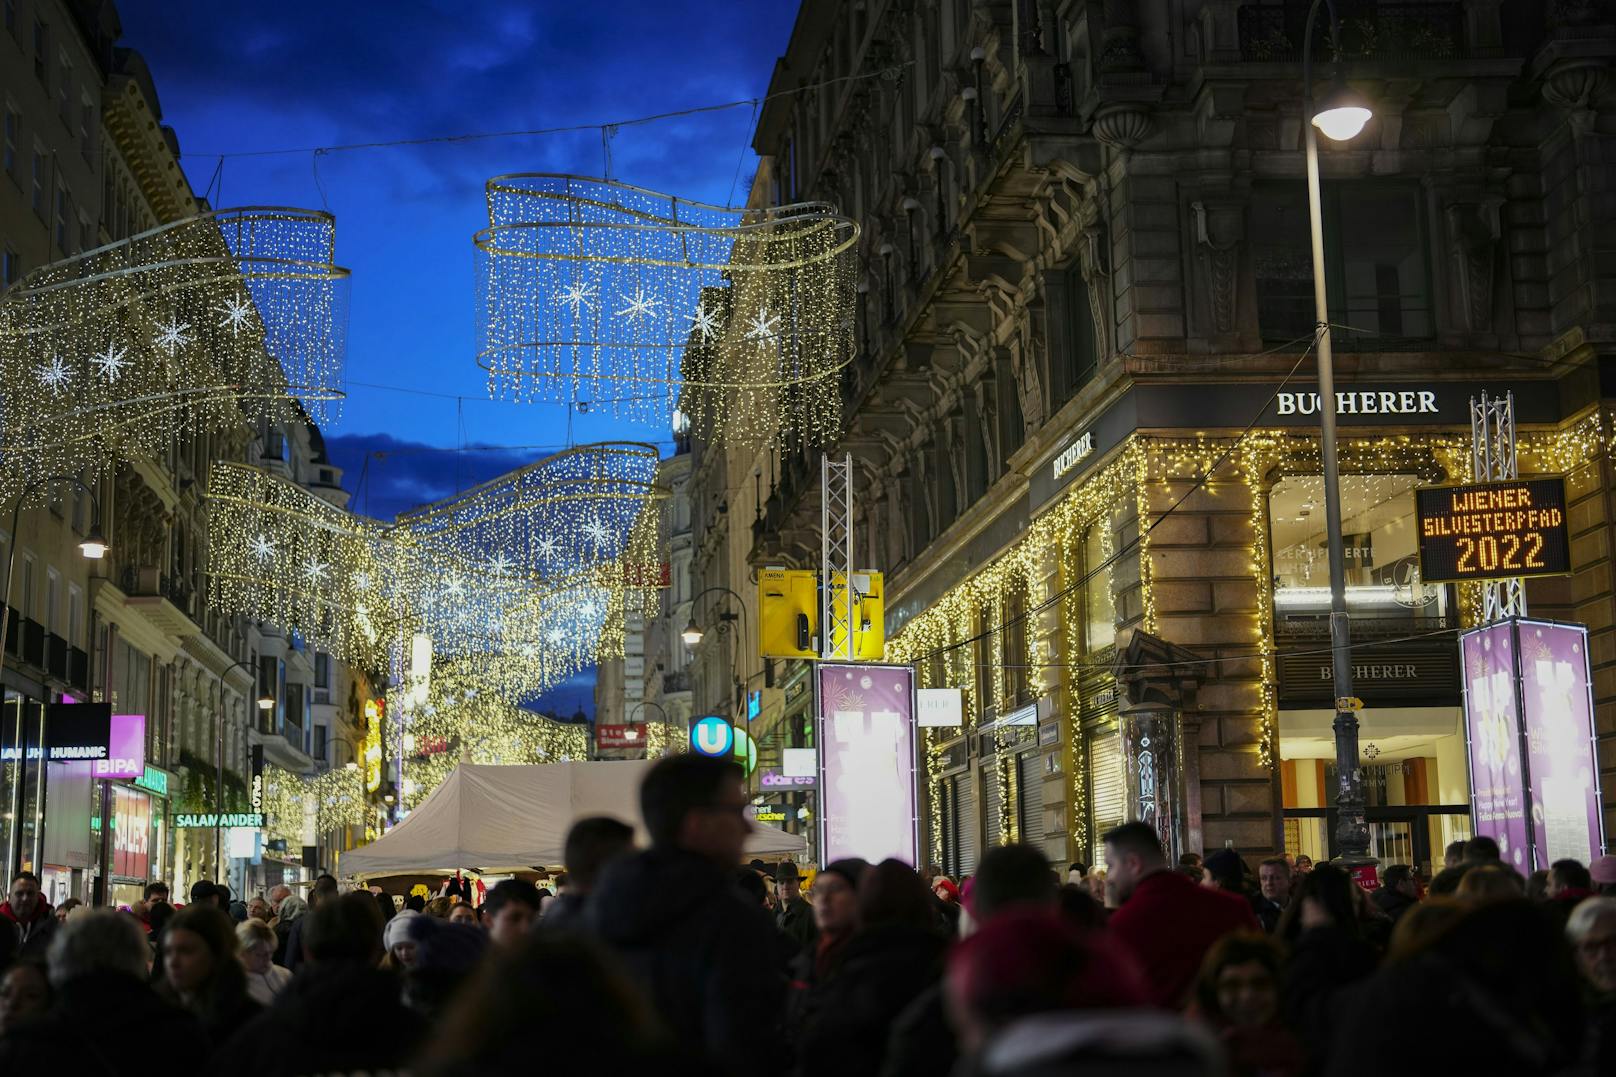 Österreichs größte Silvesterfeier, der Wiener Silvesterpfad, hatte insgesamt 12 Stunden lang geöffnet.